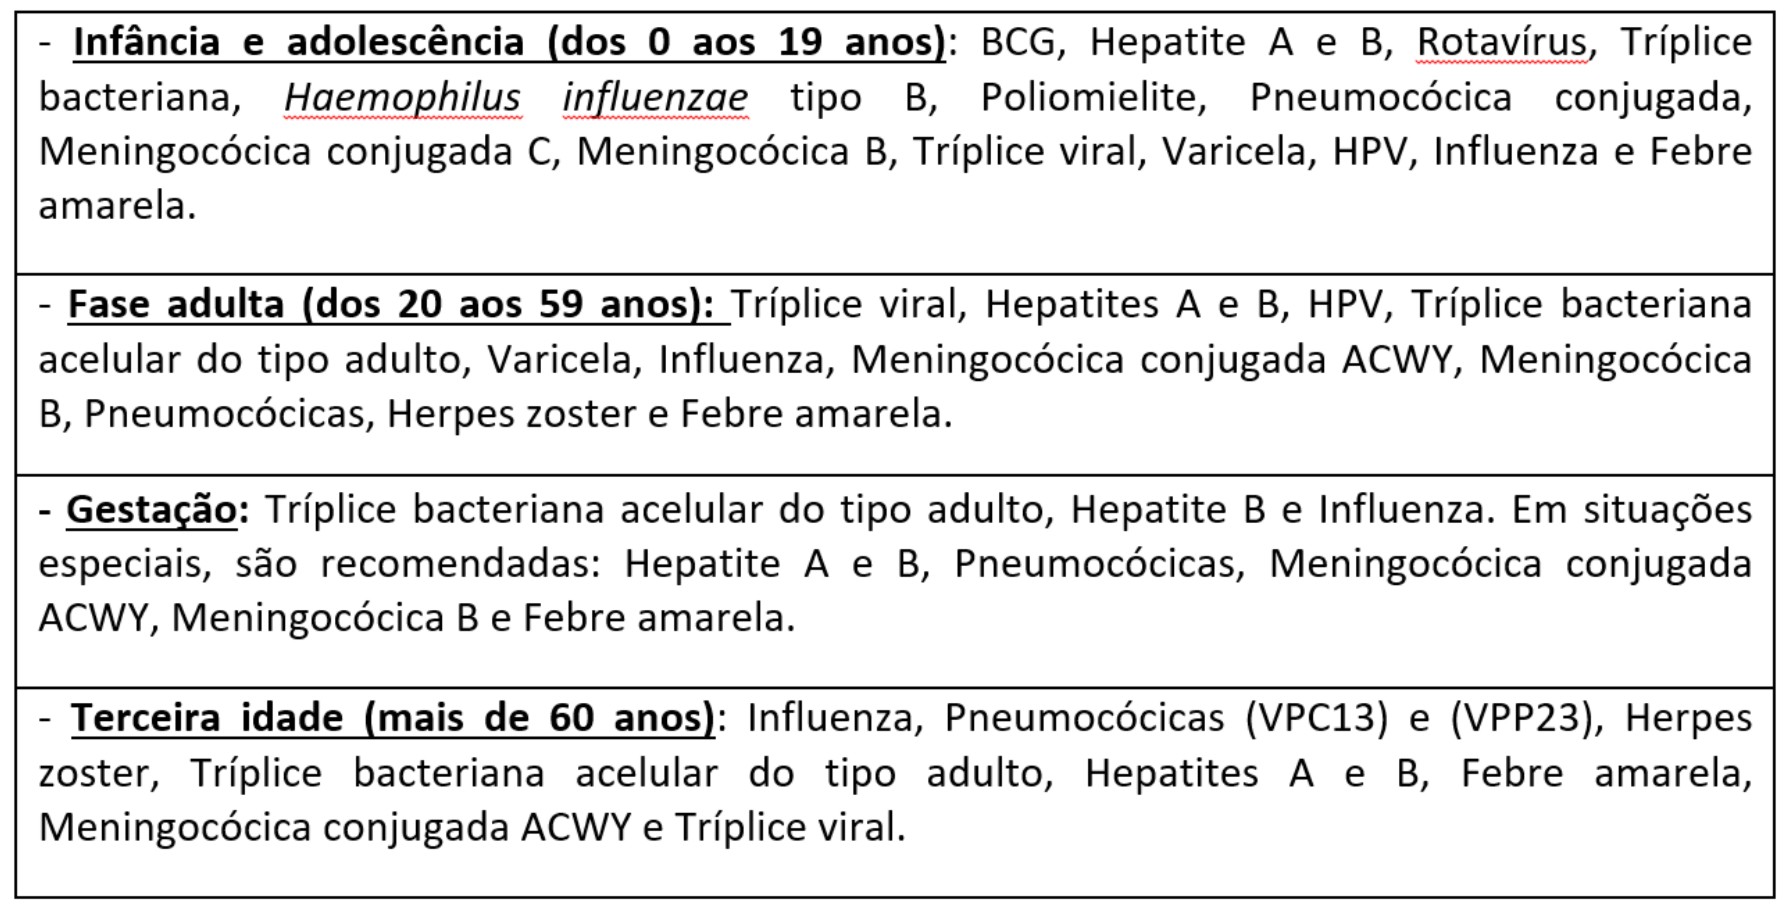 Tabela do artigo de vacinas (12-03-2019)